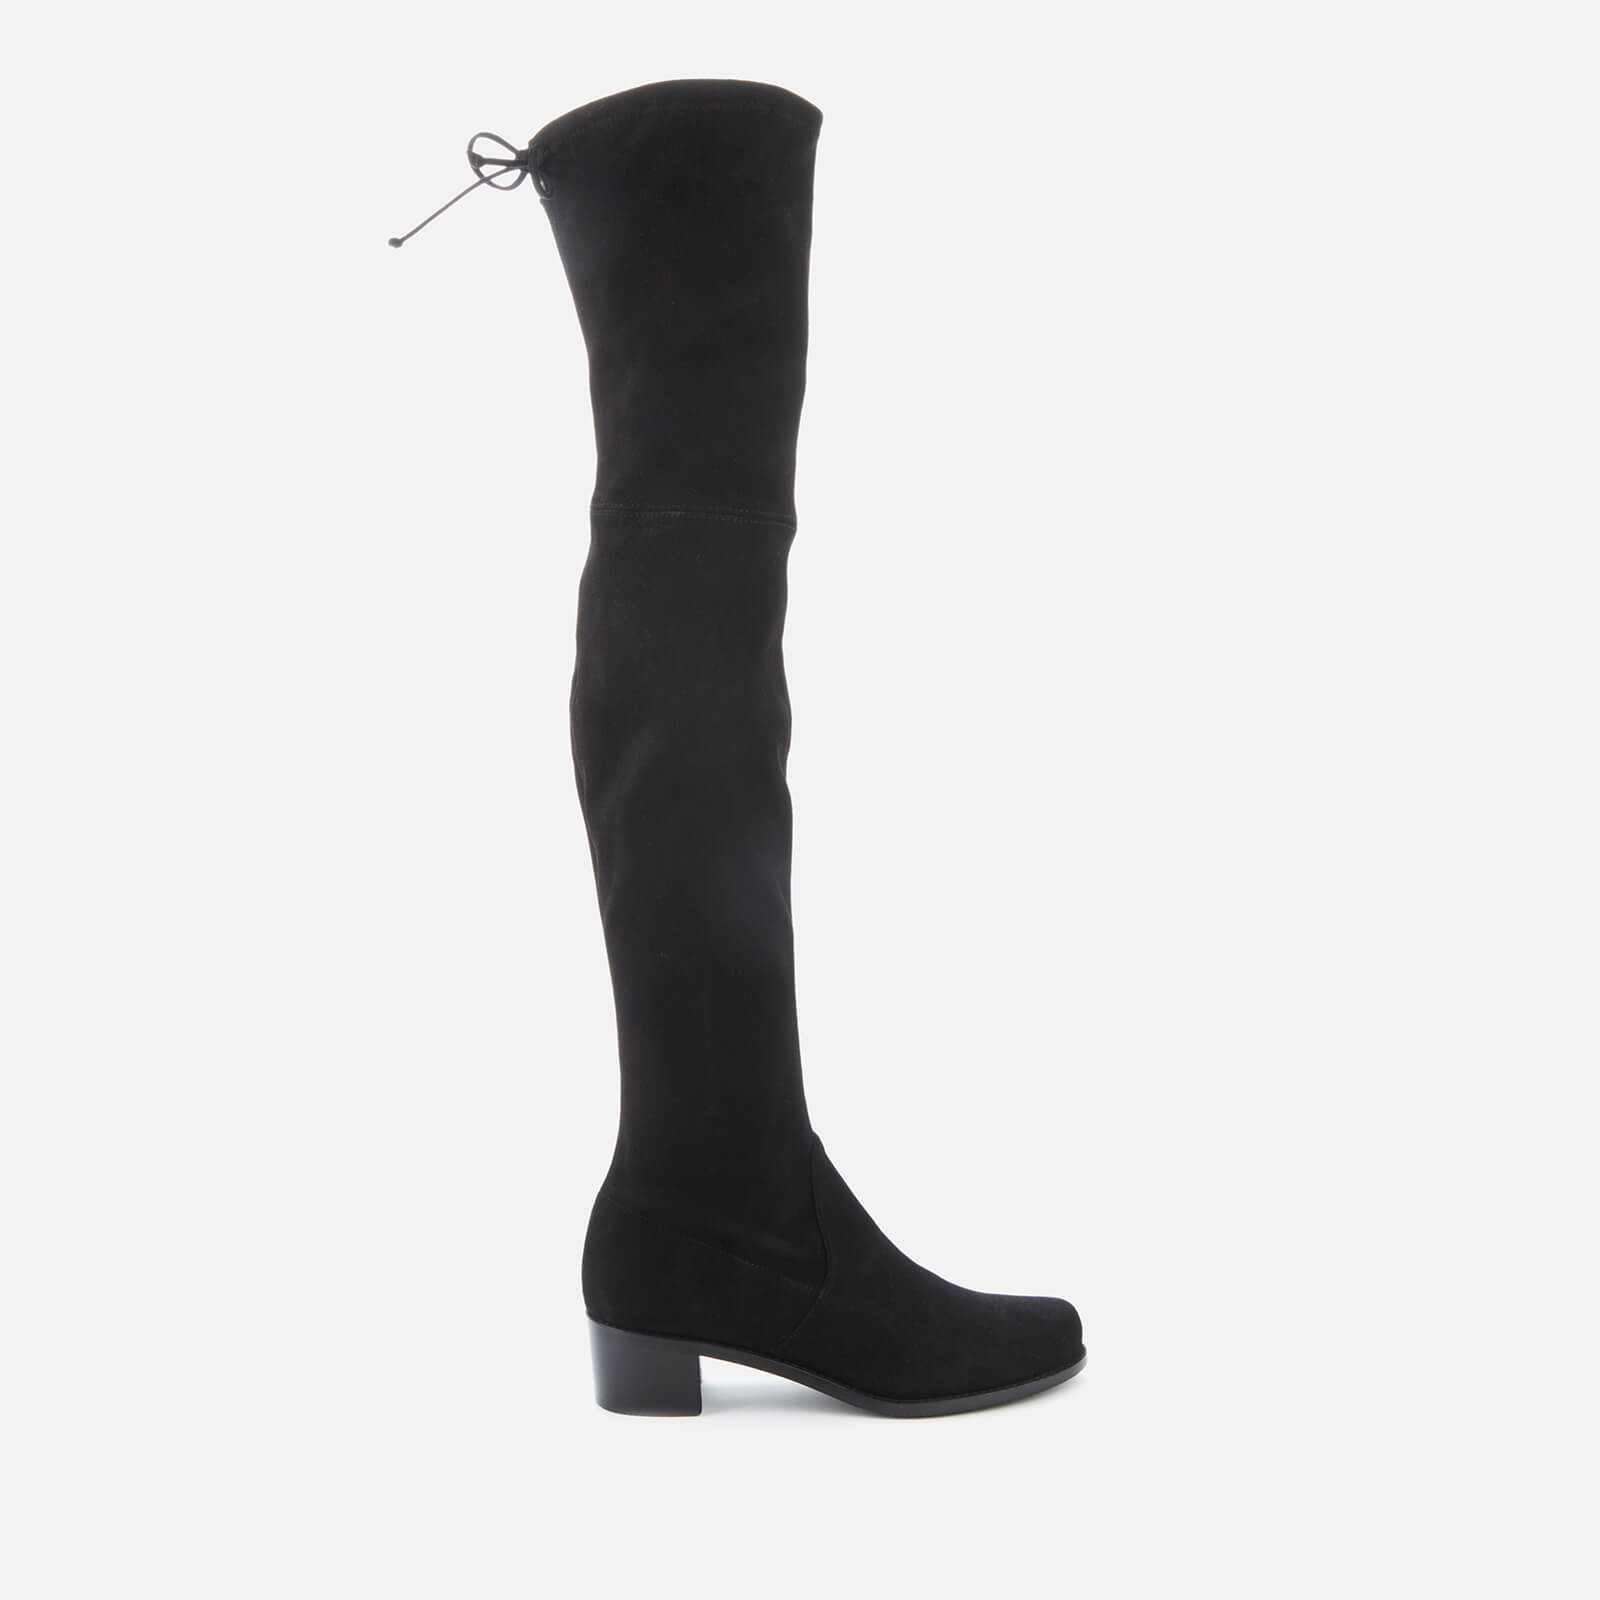 Stuart Weitzman Women's Midland Suede Over The Knee Heeled Boots - Black - UK 7